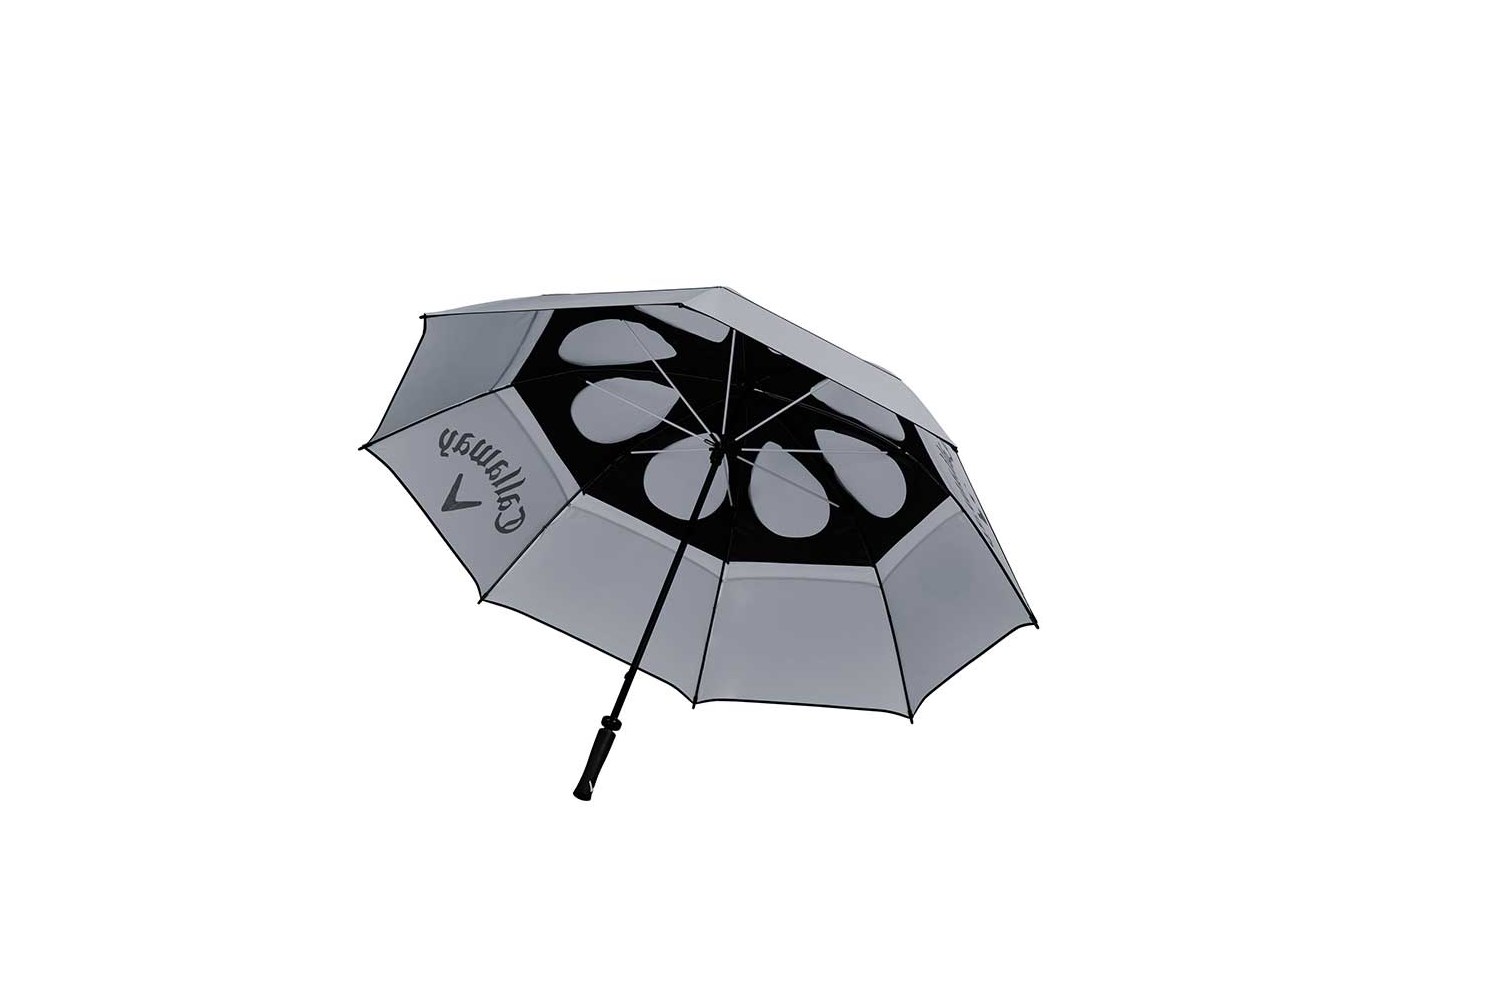 Callaway | Shield 64" Umbrella | Grey / Black